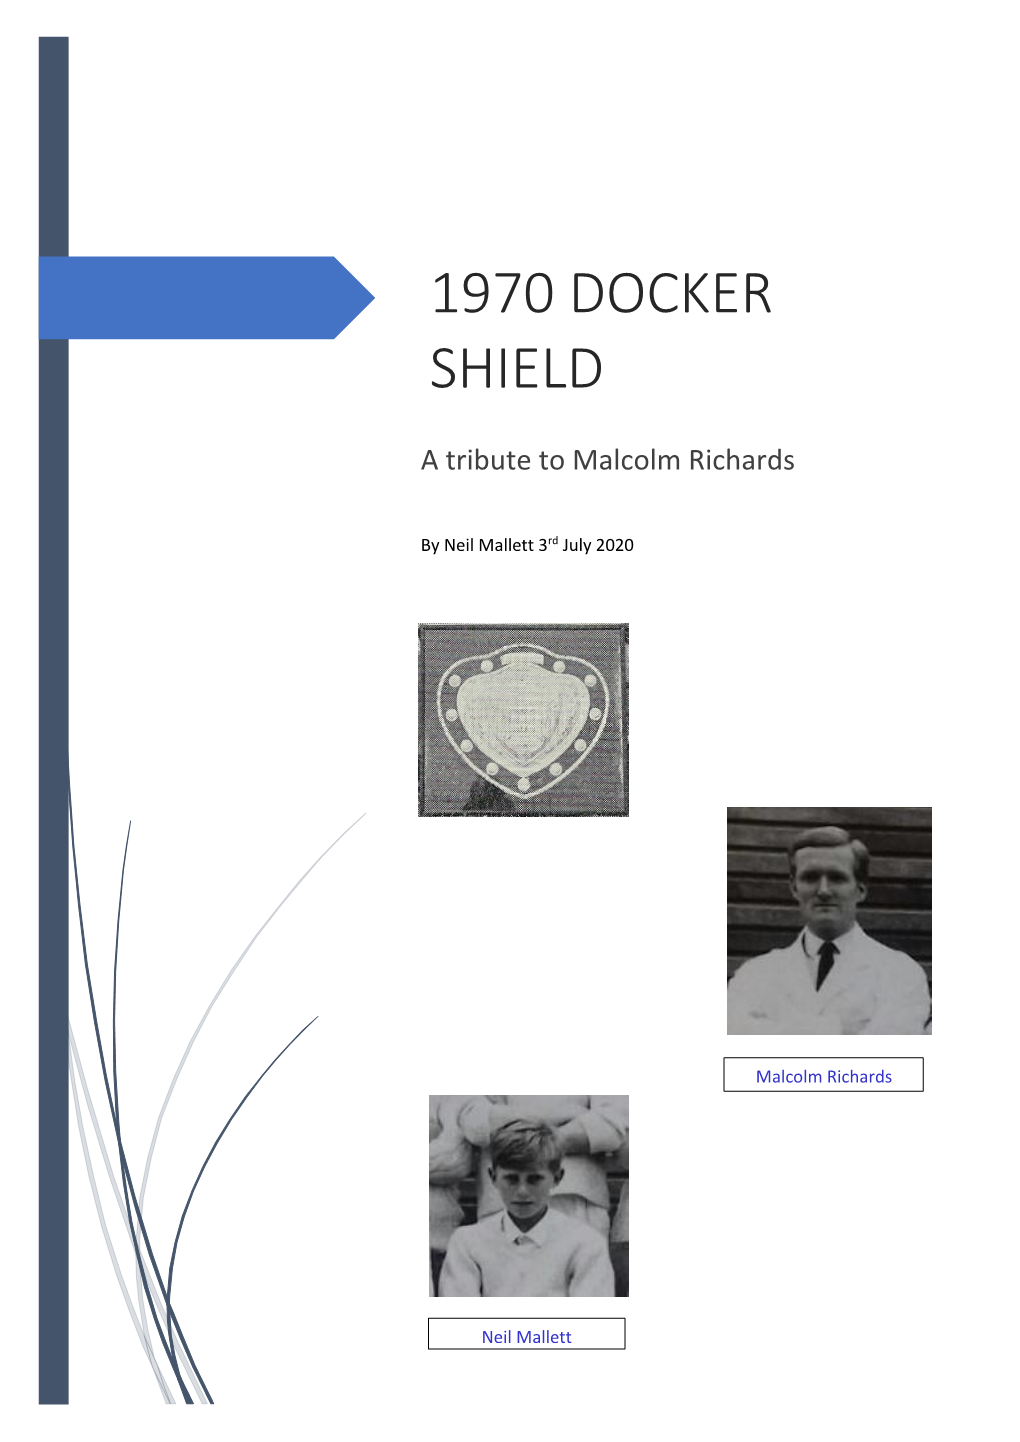 1970 Docker Shield